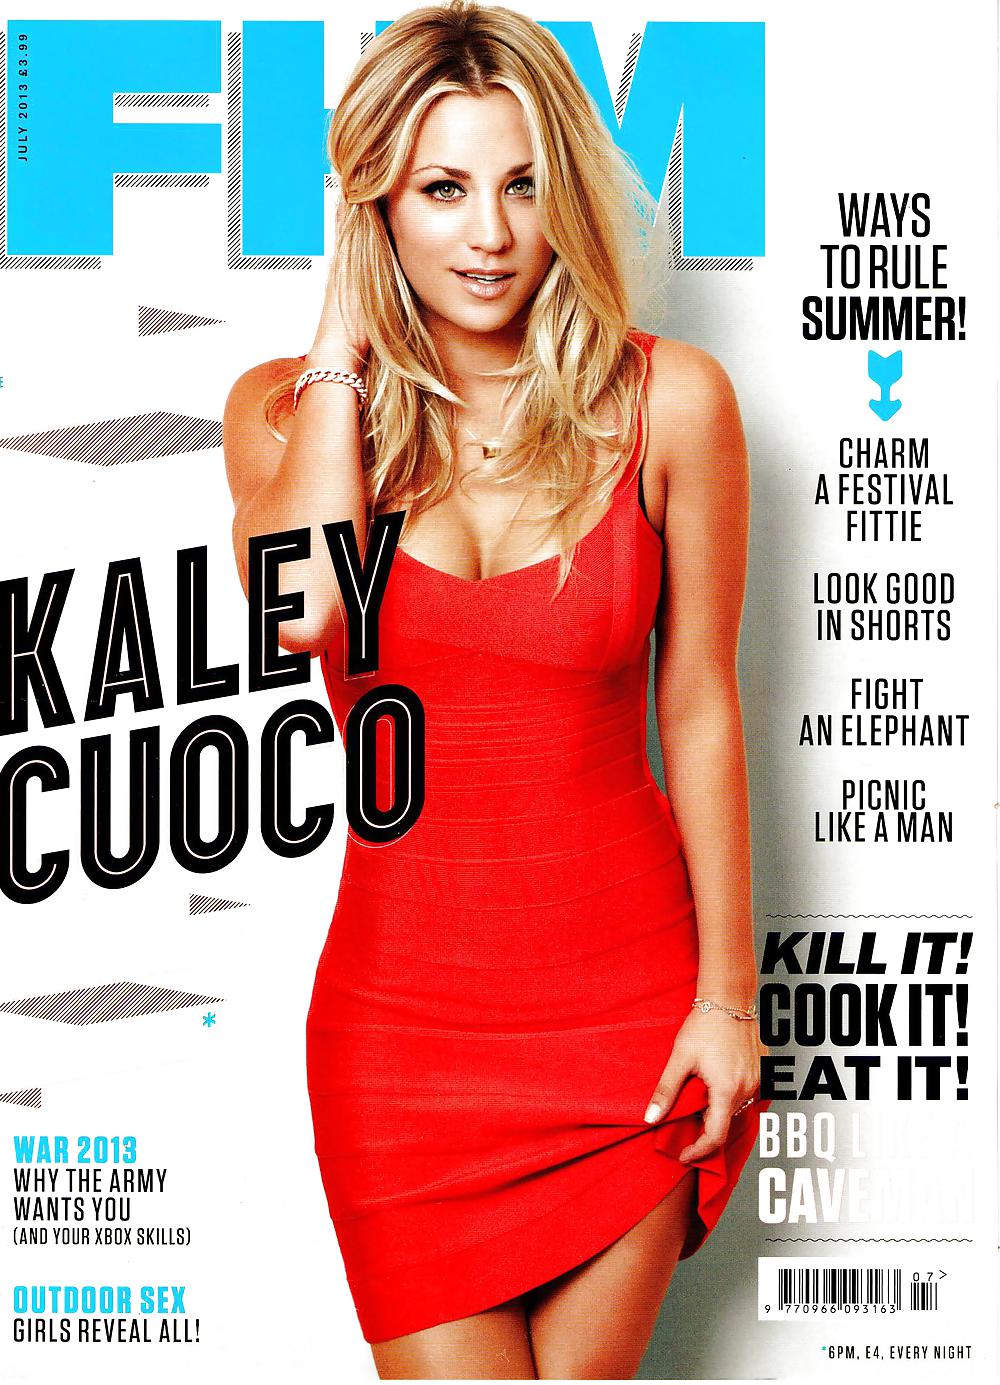 Kaley Cuoco - Magazine Fhm Uk Juillet 2013 #18221018